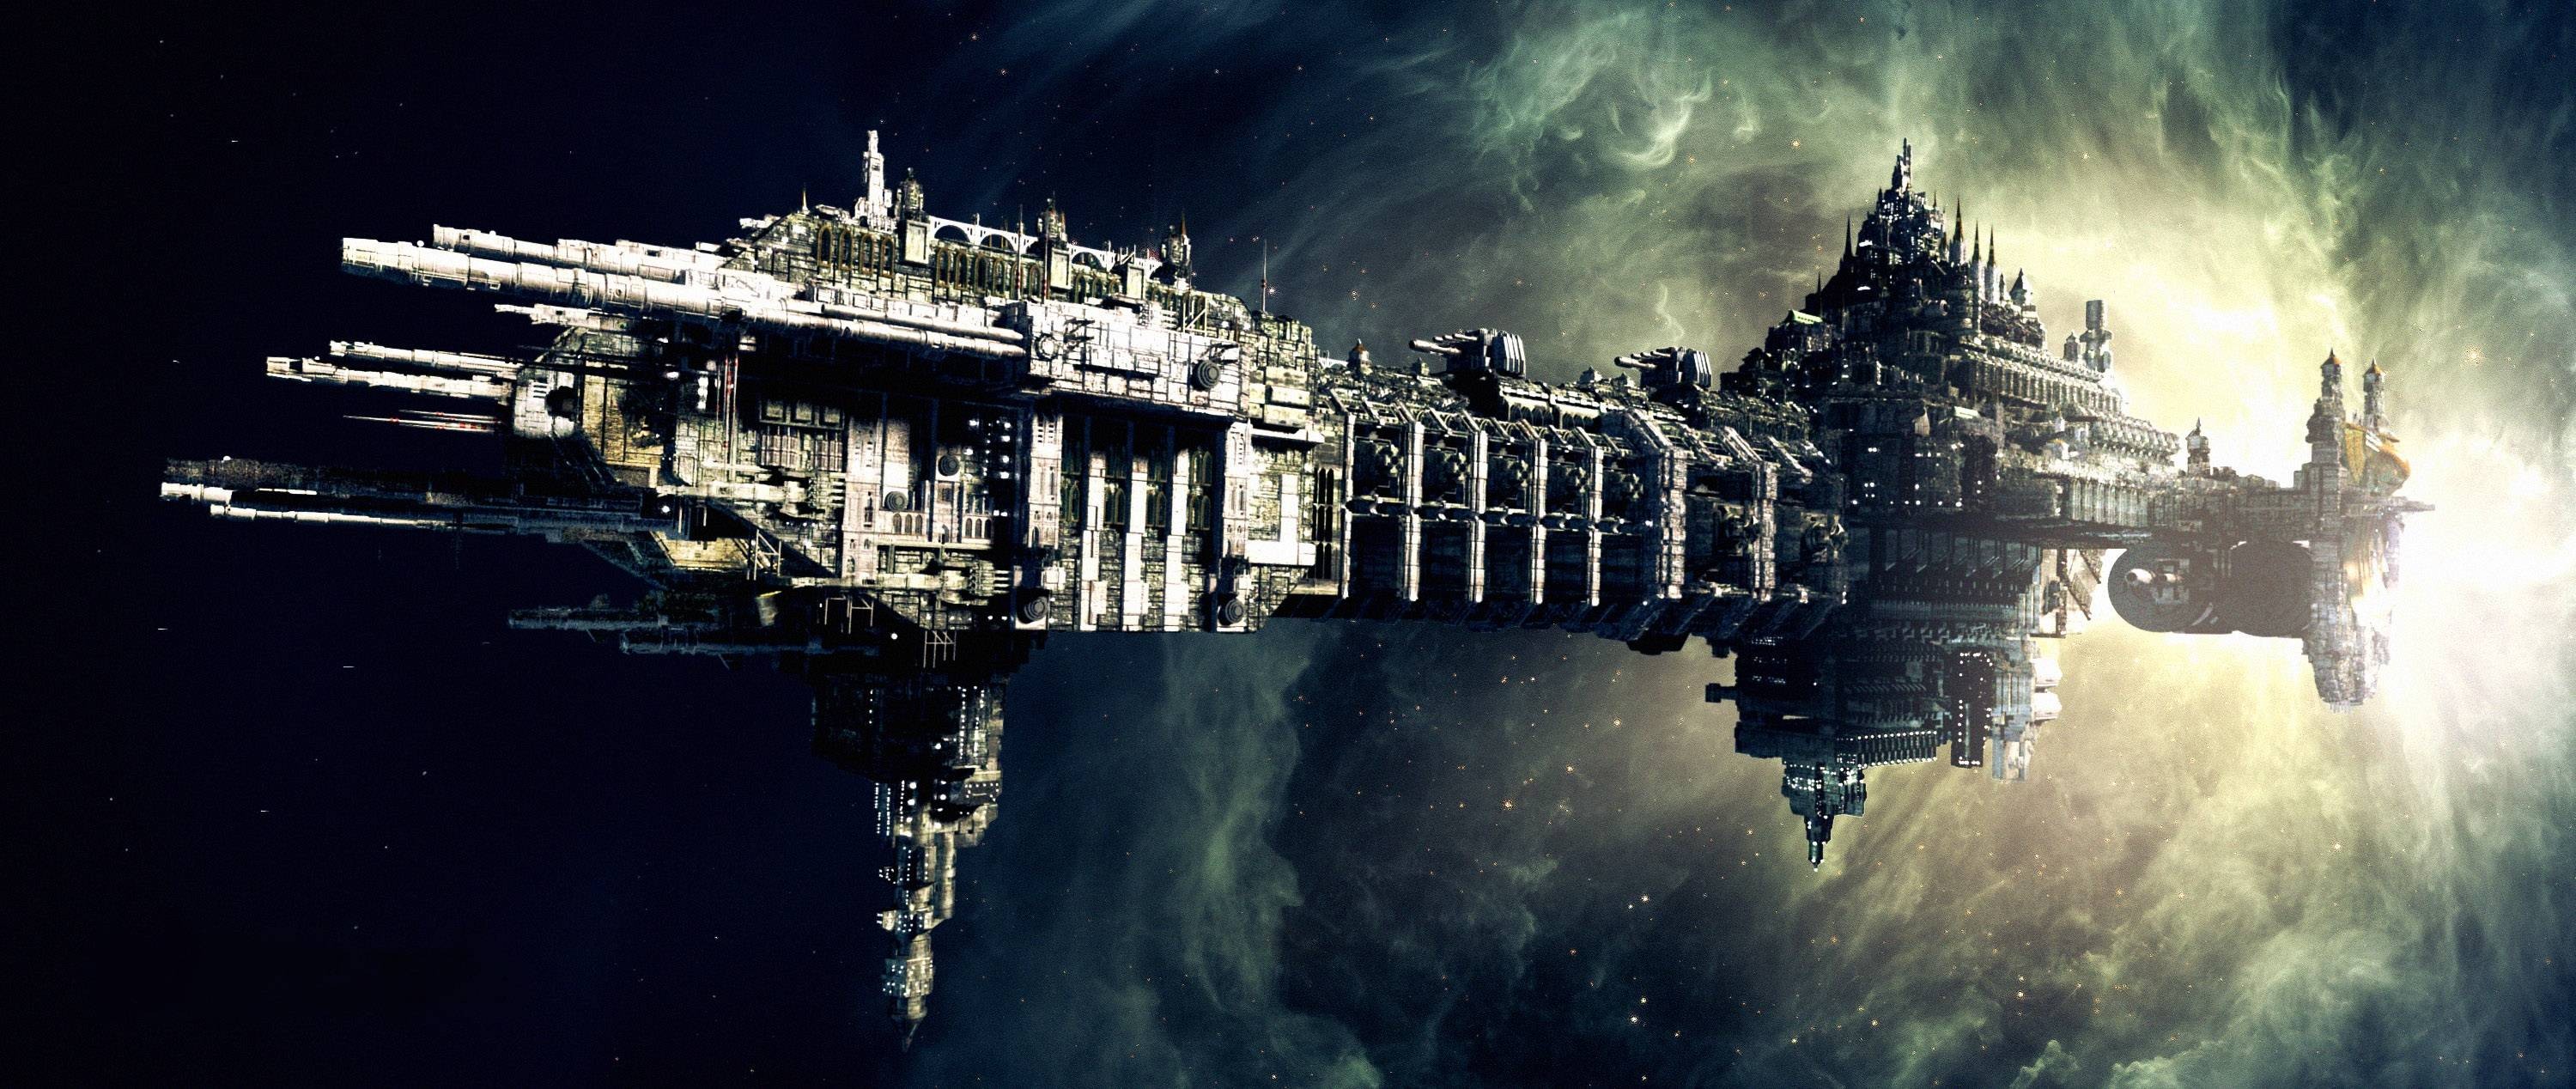 Space Science Fiction Spaceship Warhammer 40 000 Battlefleet Gothic Imperium Of Man 3000x1268